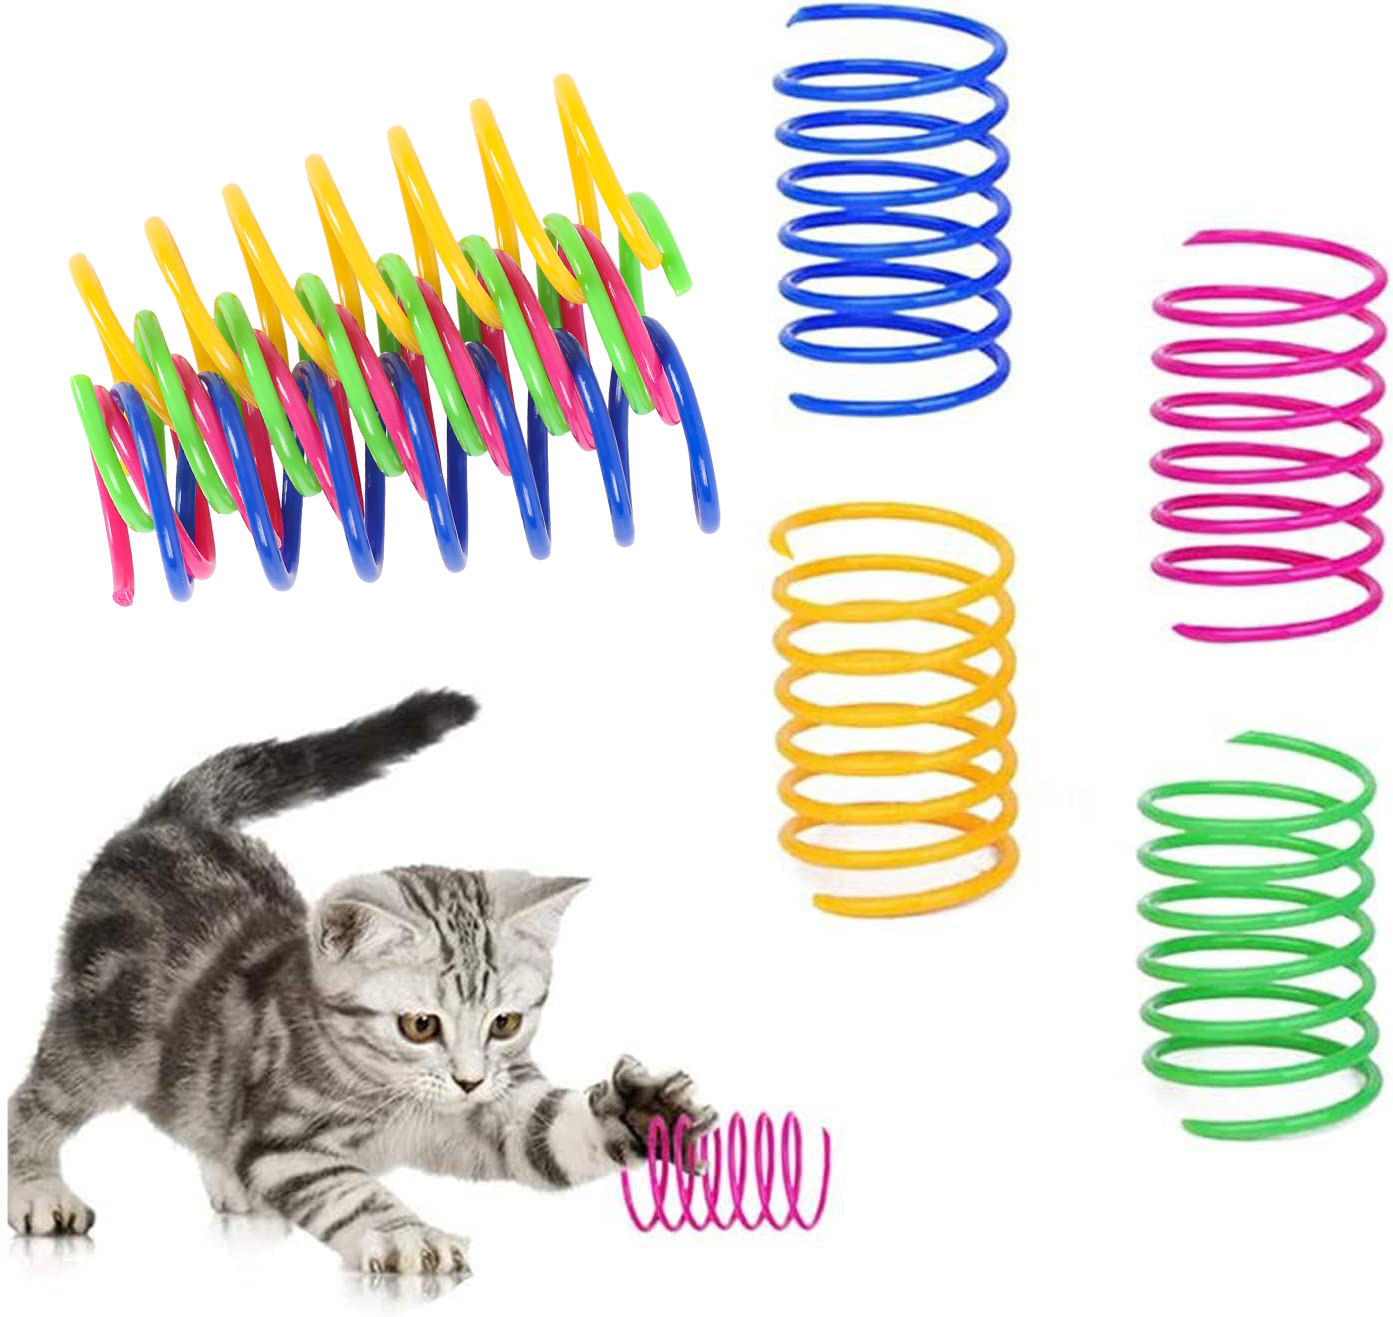 Paquete de 4 xoguetes interactivos para gatos de plástico duradeiro con resorte en espiral